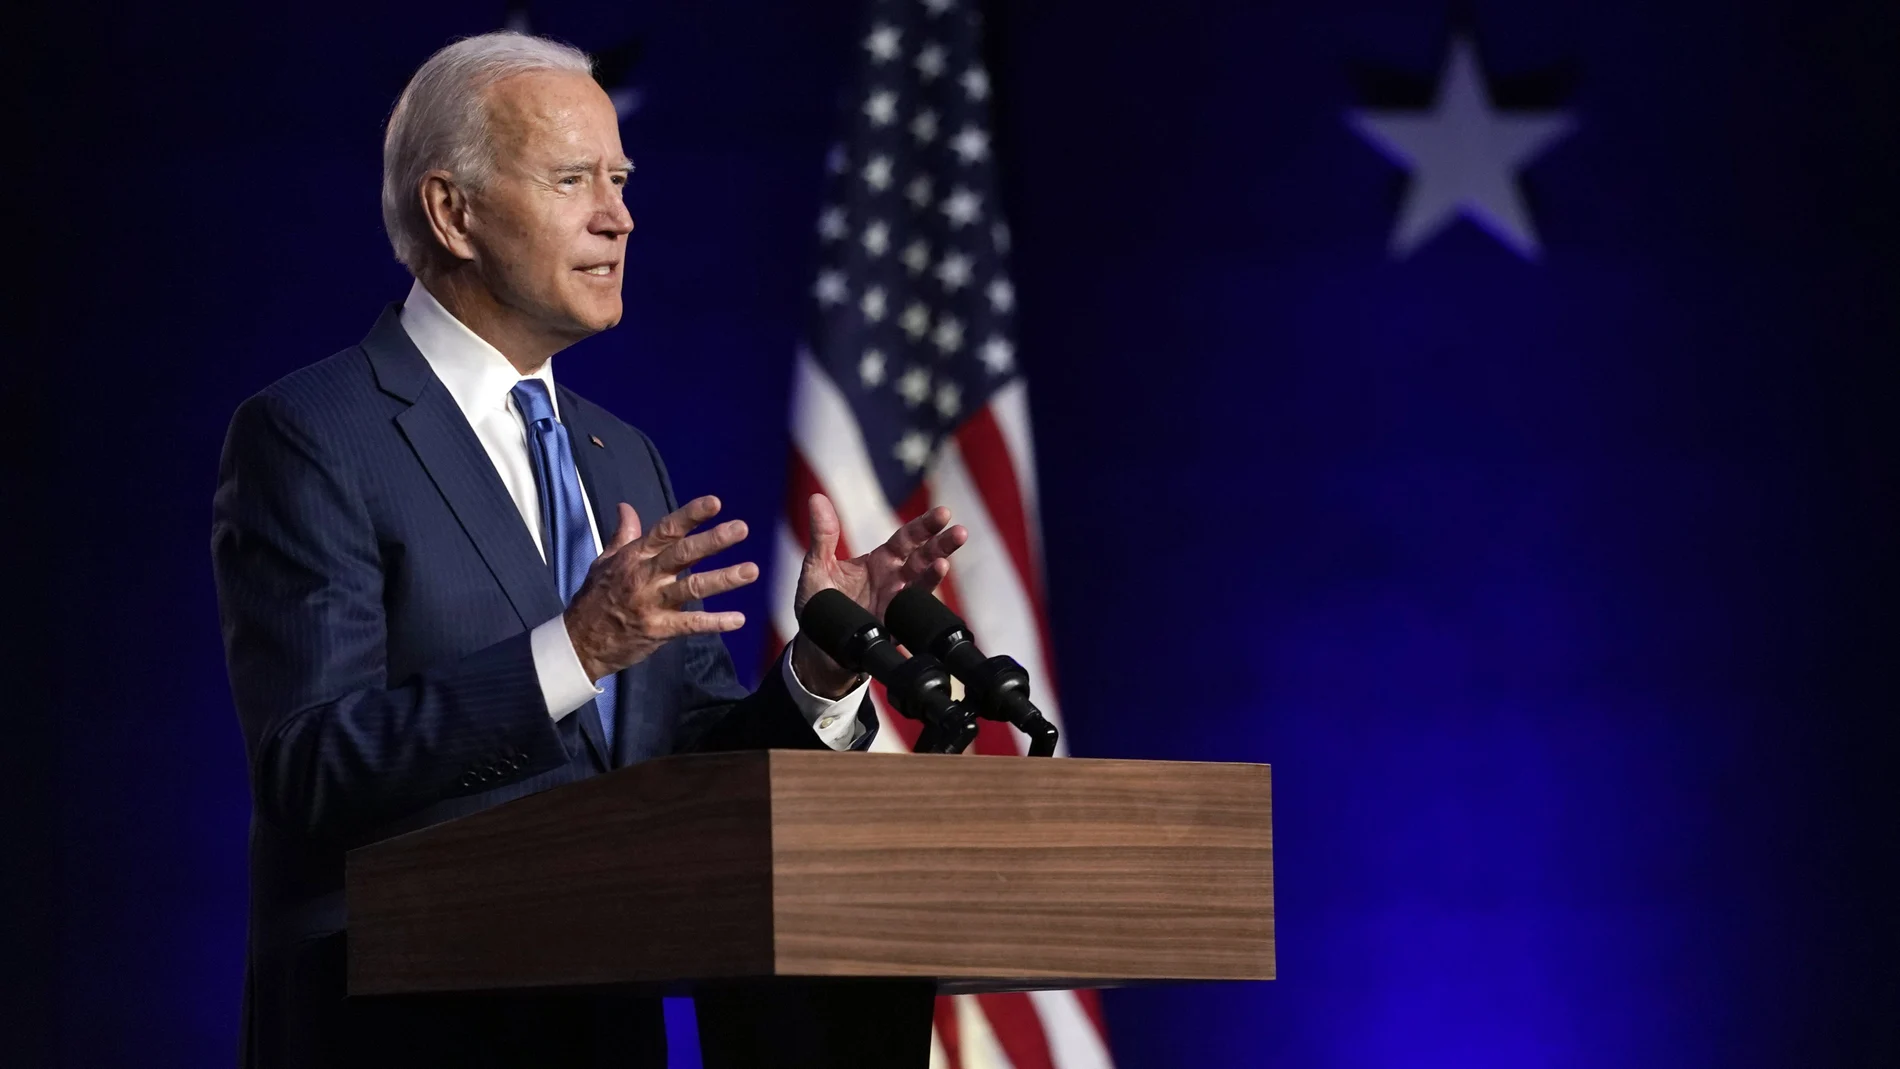 El candidato demócrata a la presidencia, el vicepresidente Joe Biden, durante su discurso en Wilmington, Delaware